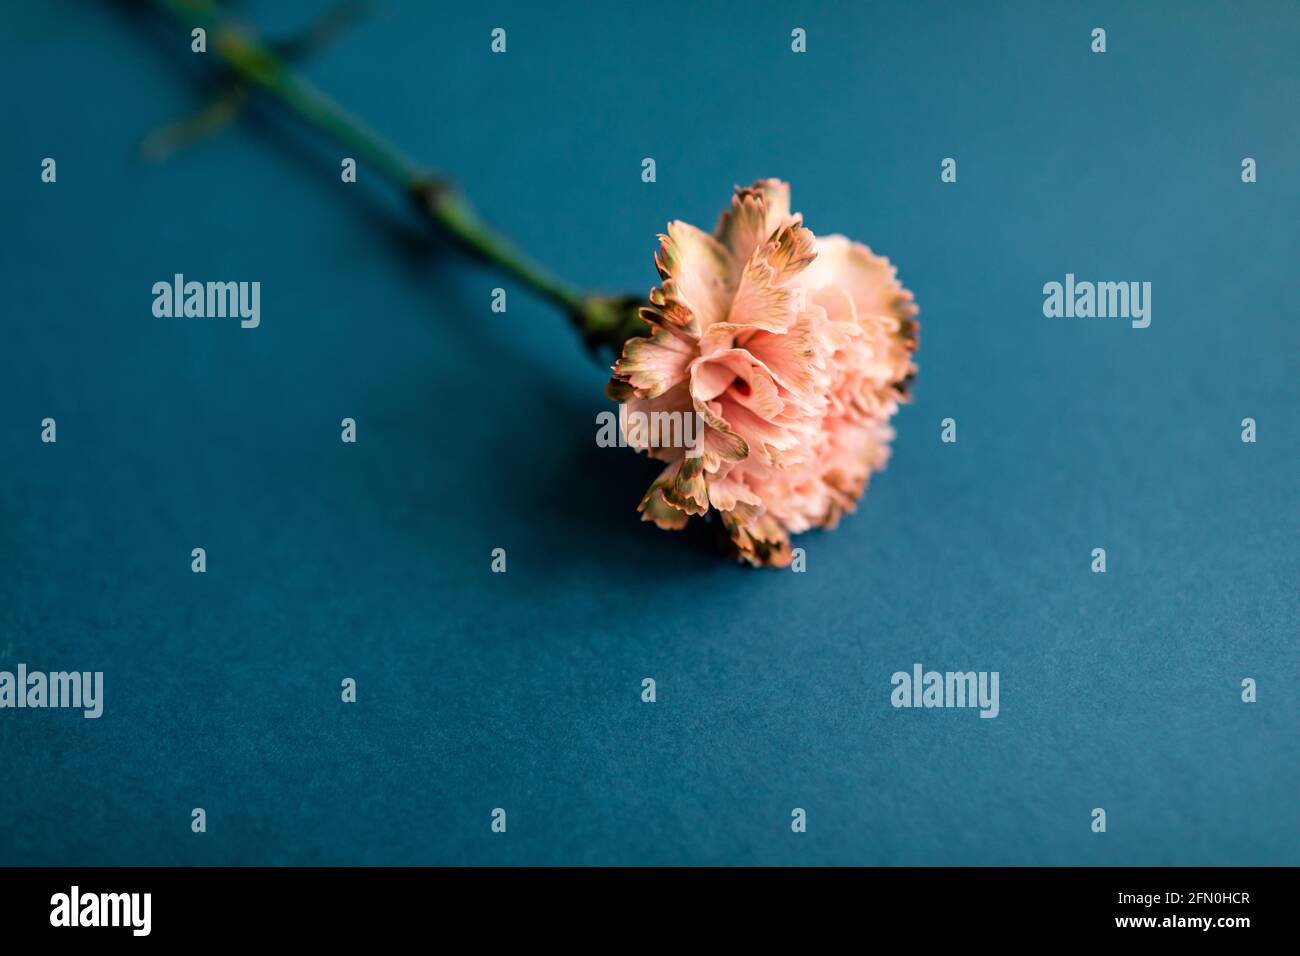 Blumenbuchstabe Illustration, Veranstaltungseinladungen, florale Kulissen. Eine Nelke auf blauem Hintergrund Stockfoto